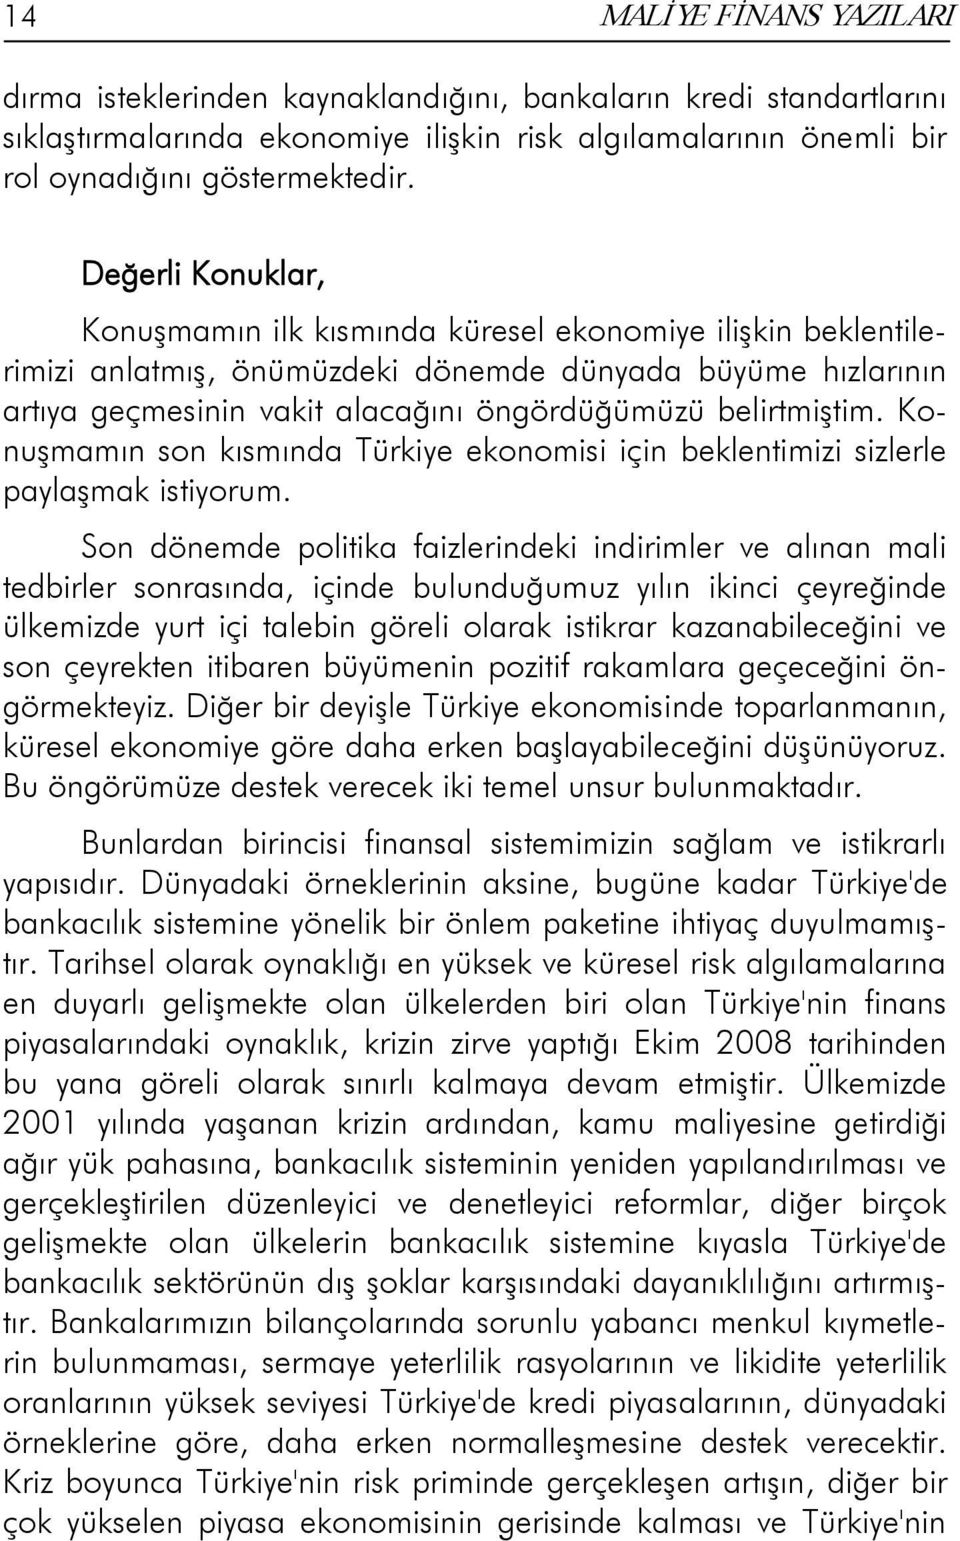 belirtmiştim. Konuşmamın son kısmında Türkiye ekonomisi için beklentimizi sizlerle paylaşmak istiyorum.